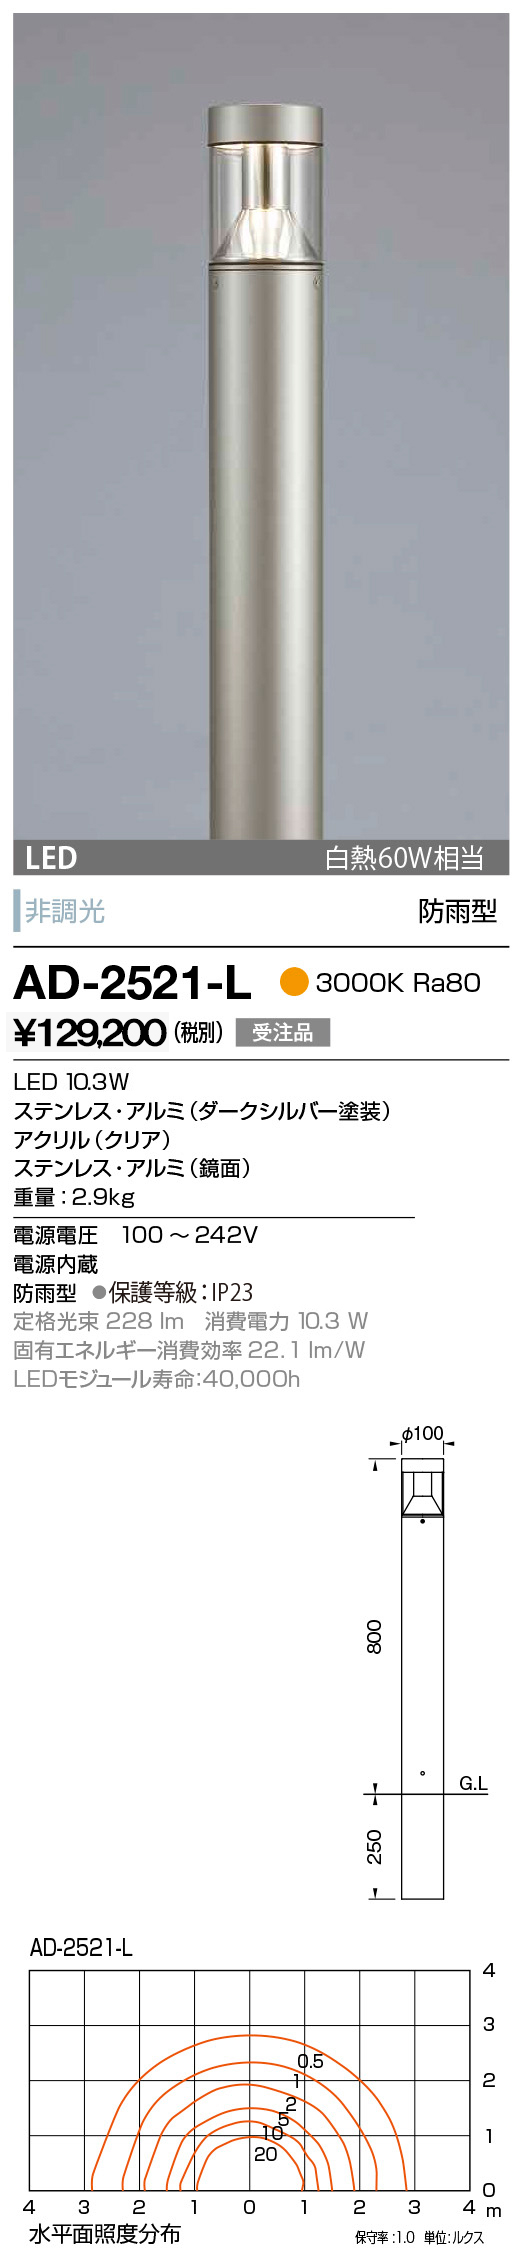 AD-2521-L